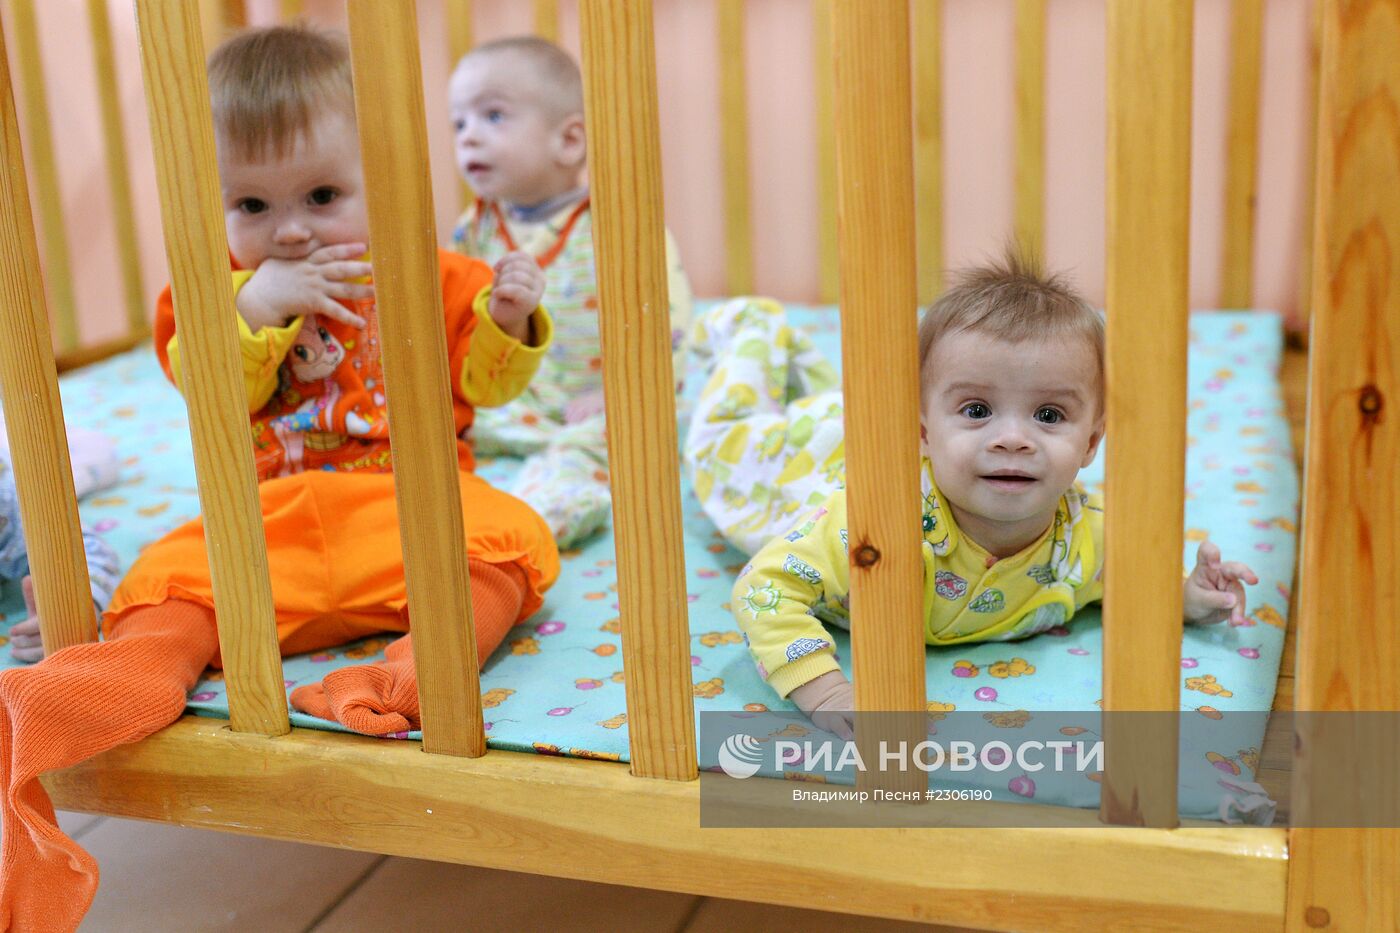 Дом малютка семей. Дом малютки в Казани. Малыши в детских домах. Малыши в доме малютки. Маленькие дети в детском доме.